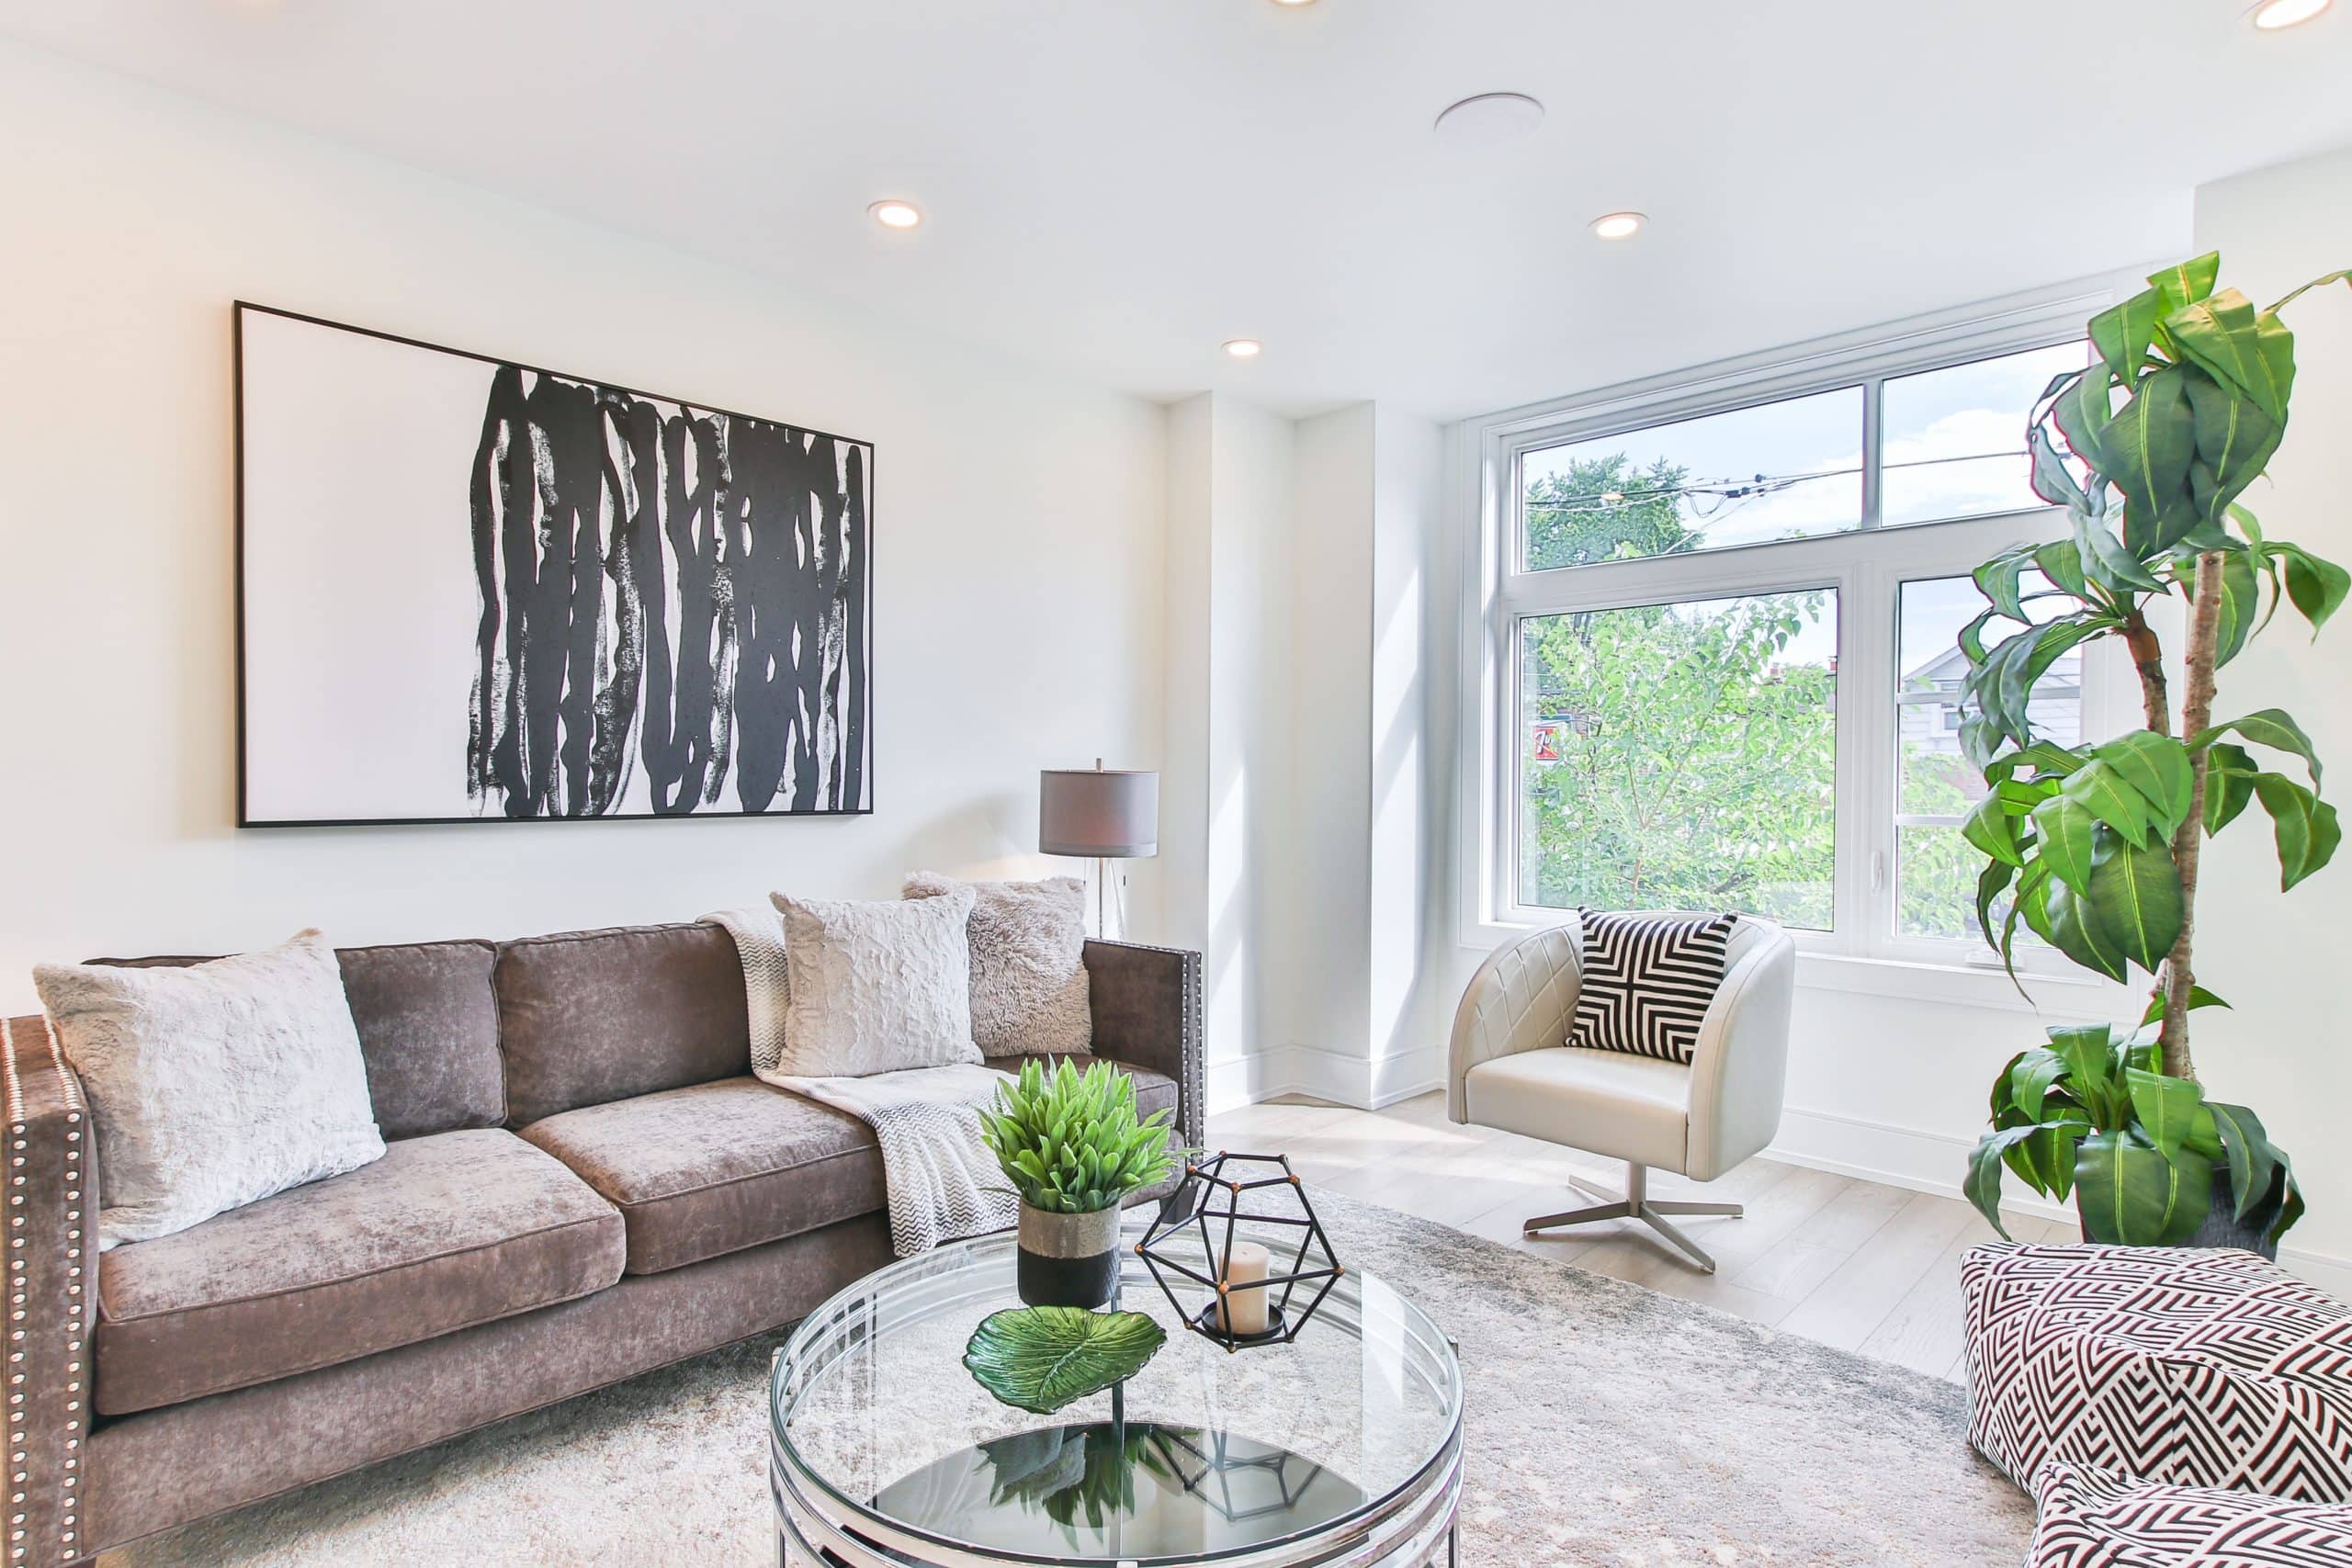 holistic interior design of living room